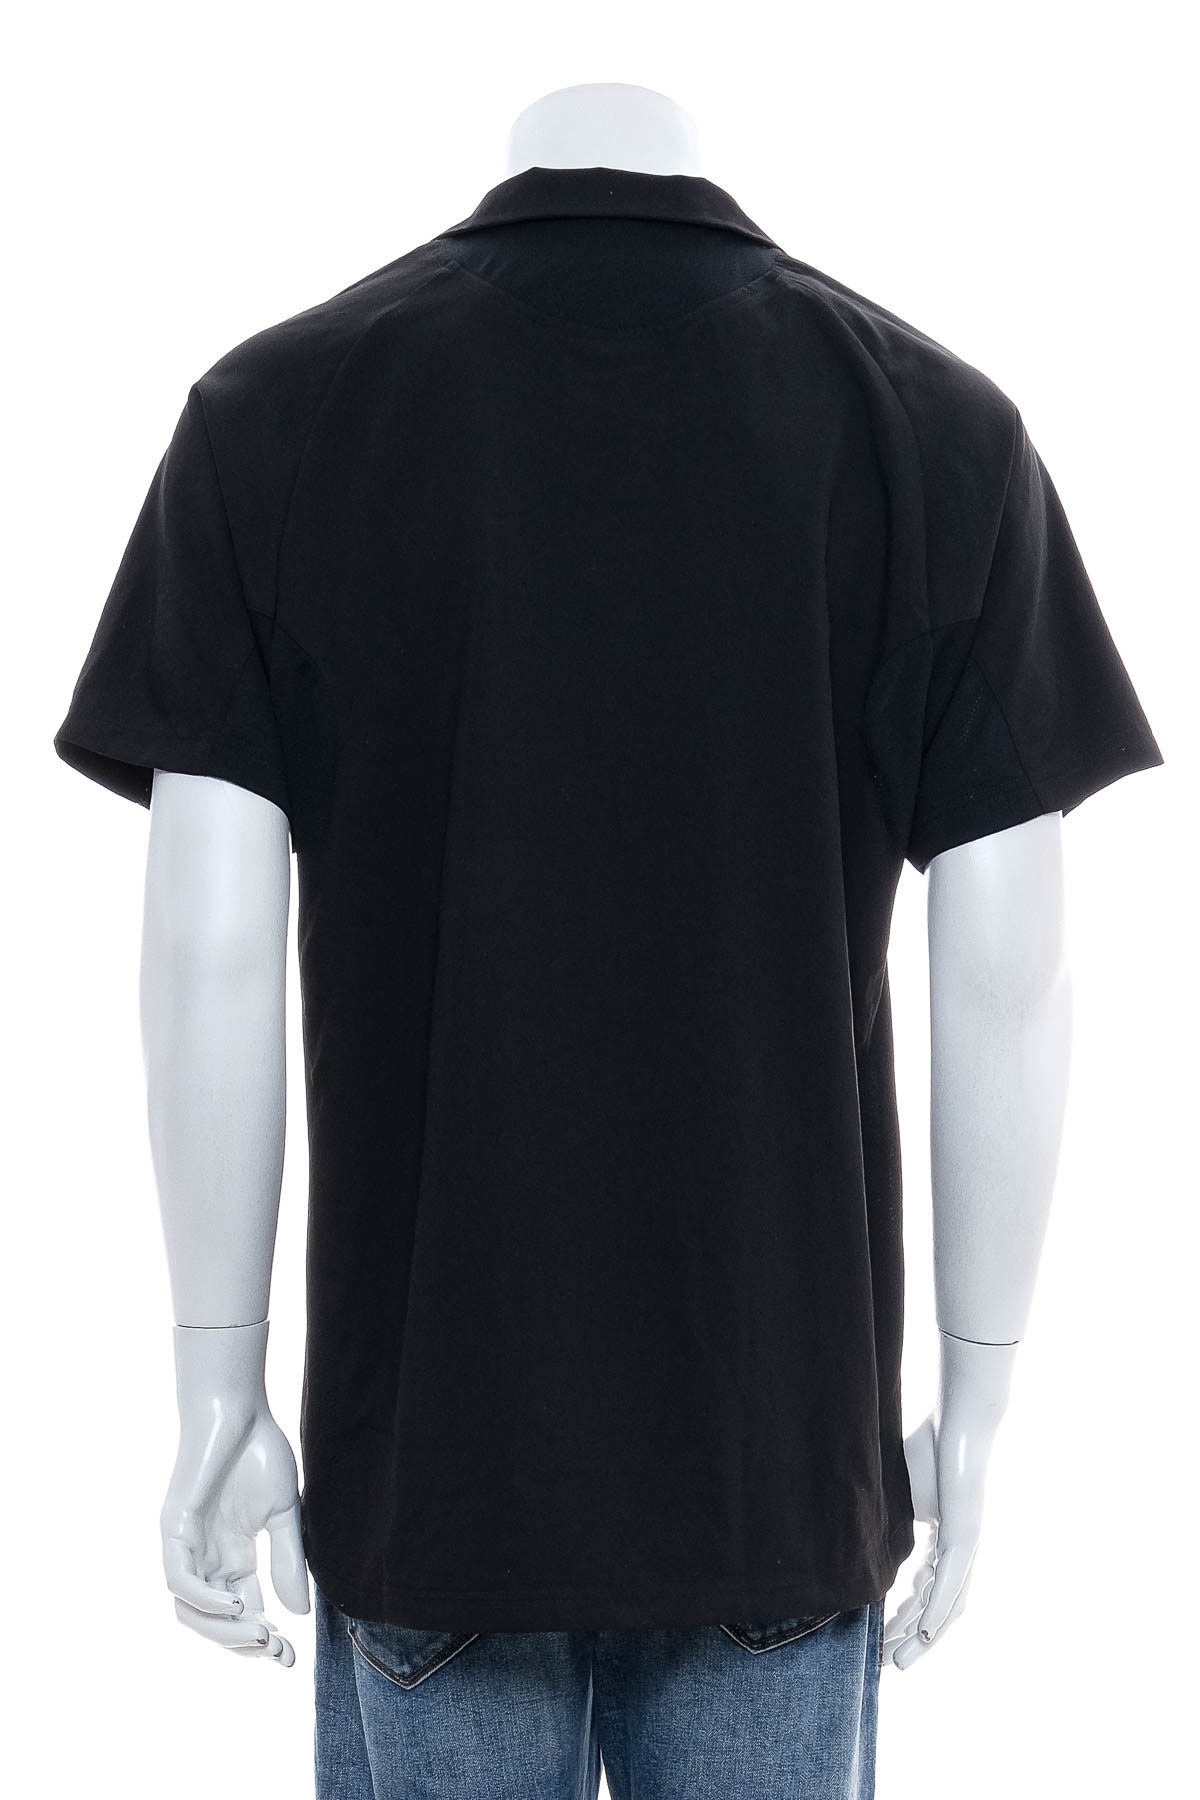 Ανδρικό μπλουζάκι - Jako - 1